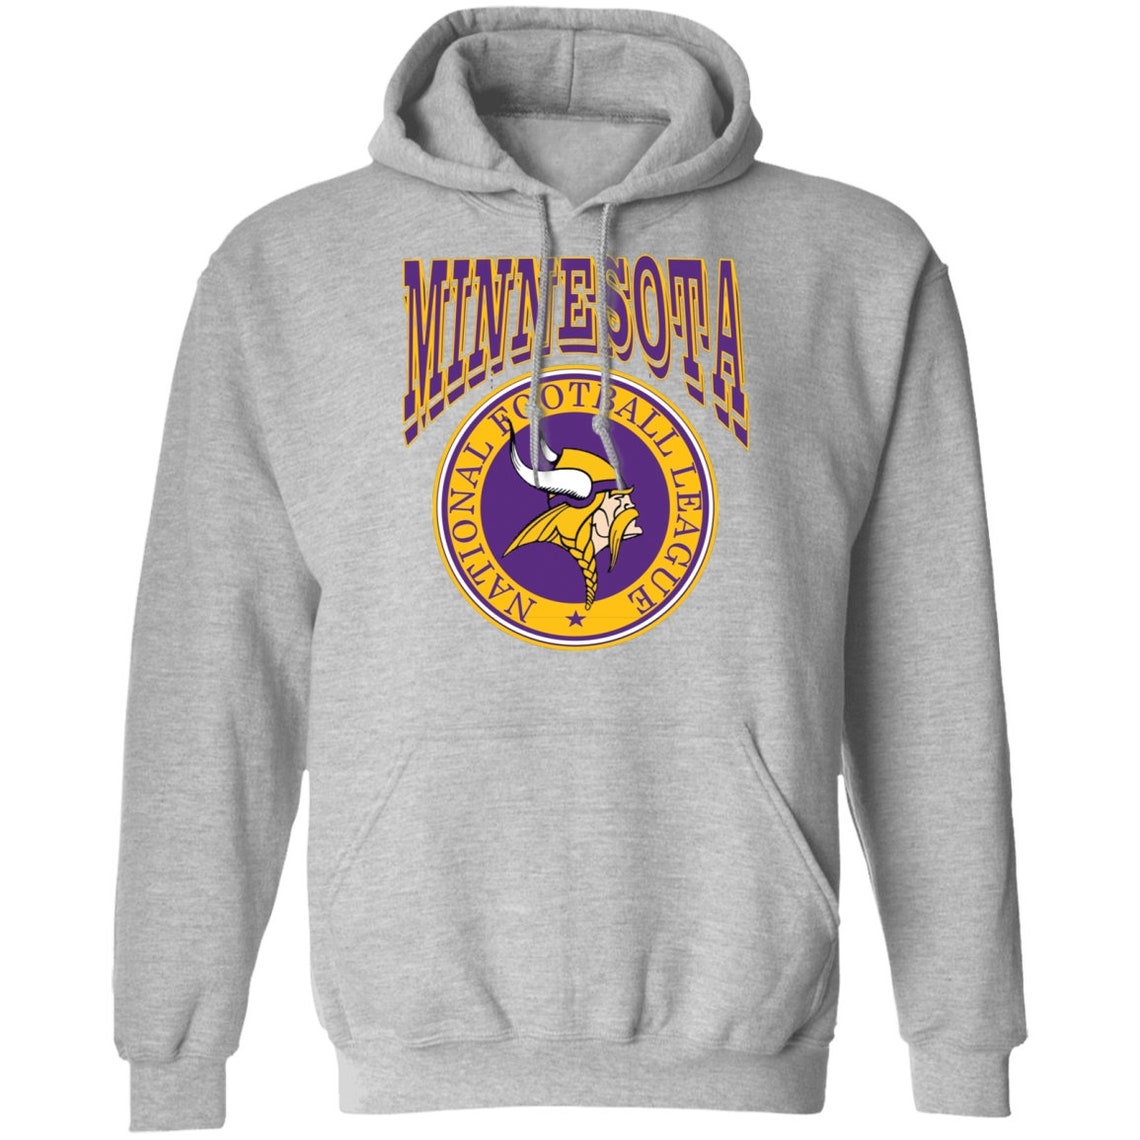 Minnesota Vikings Hoodie | Etsy